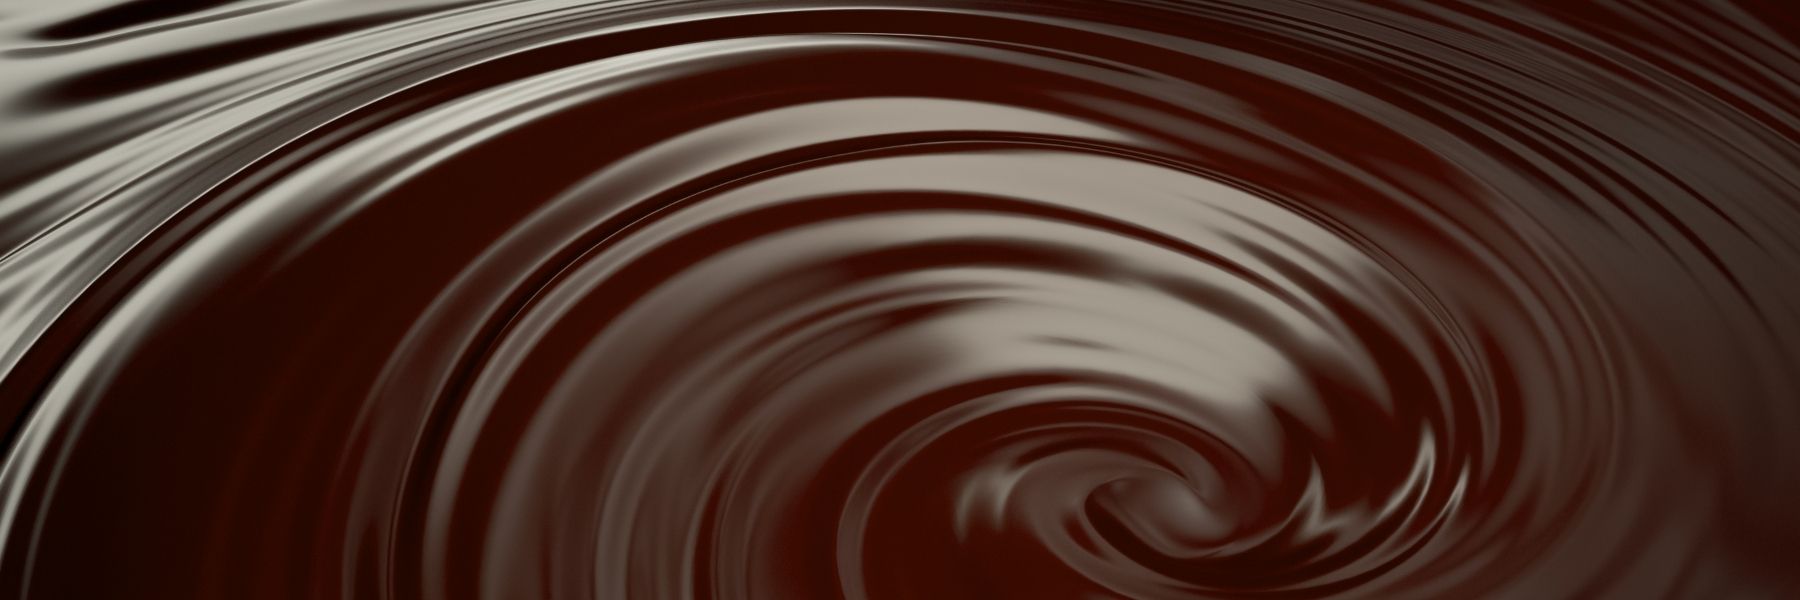 Dilettante Chocolates Dark Chocolate Swirl Blog Banner